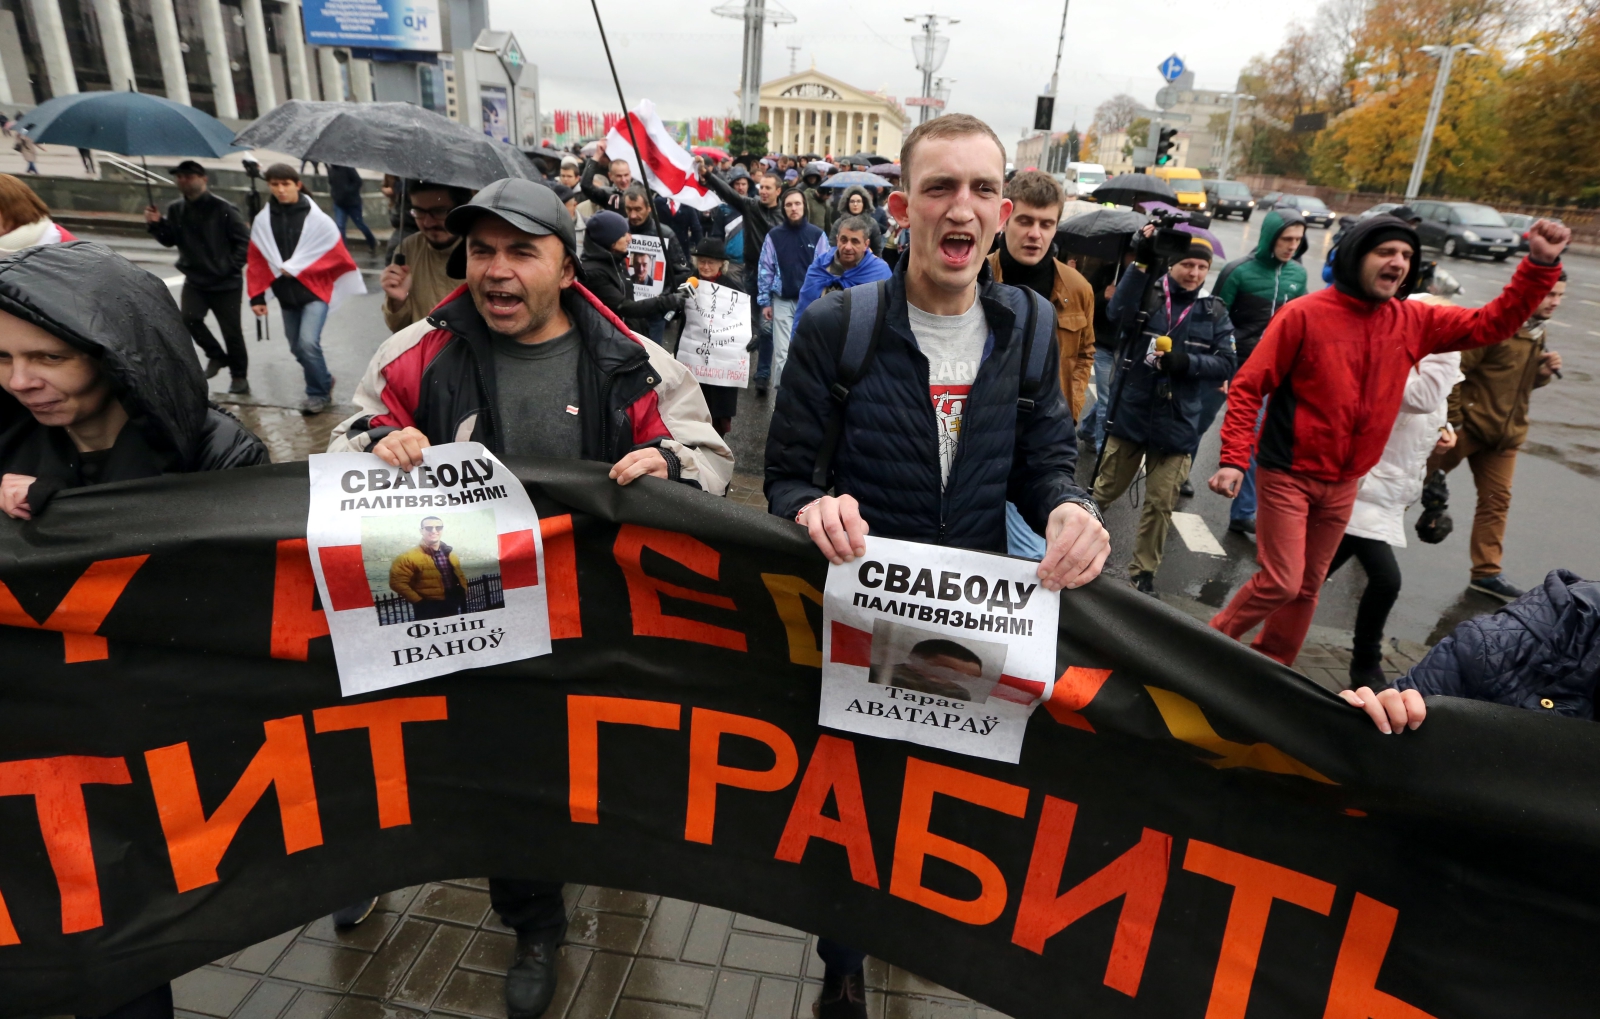 Marsz oburzonych Białorusinów 2.0 przeciw polityce władz